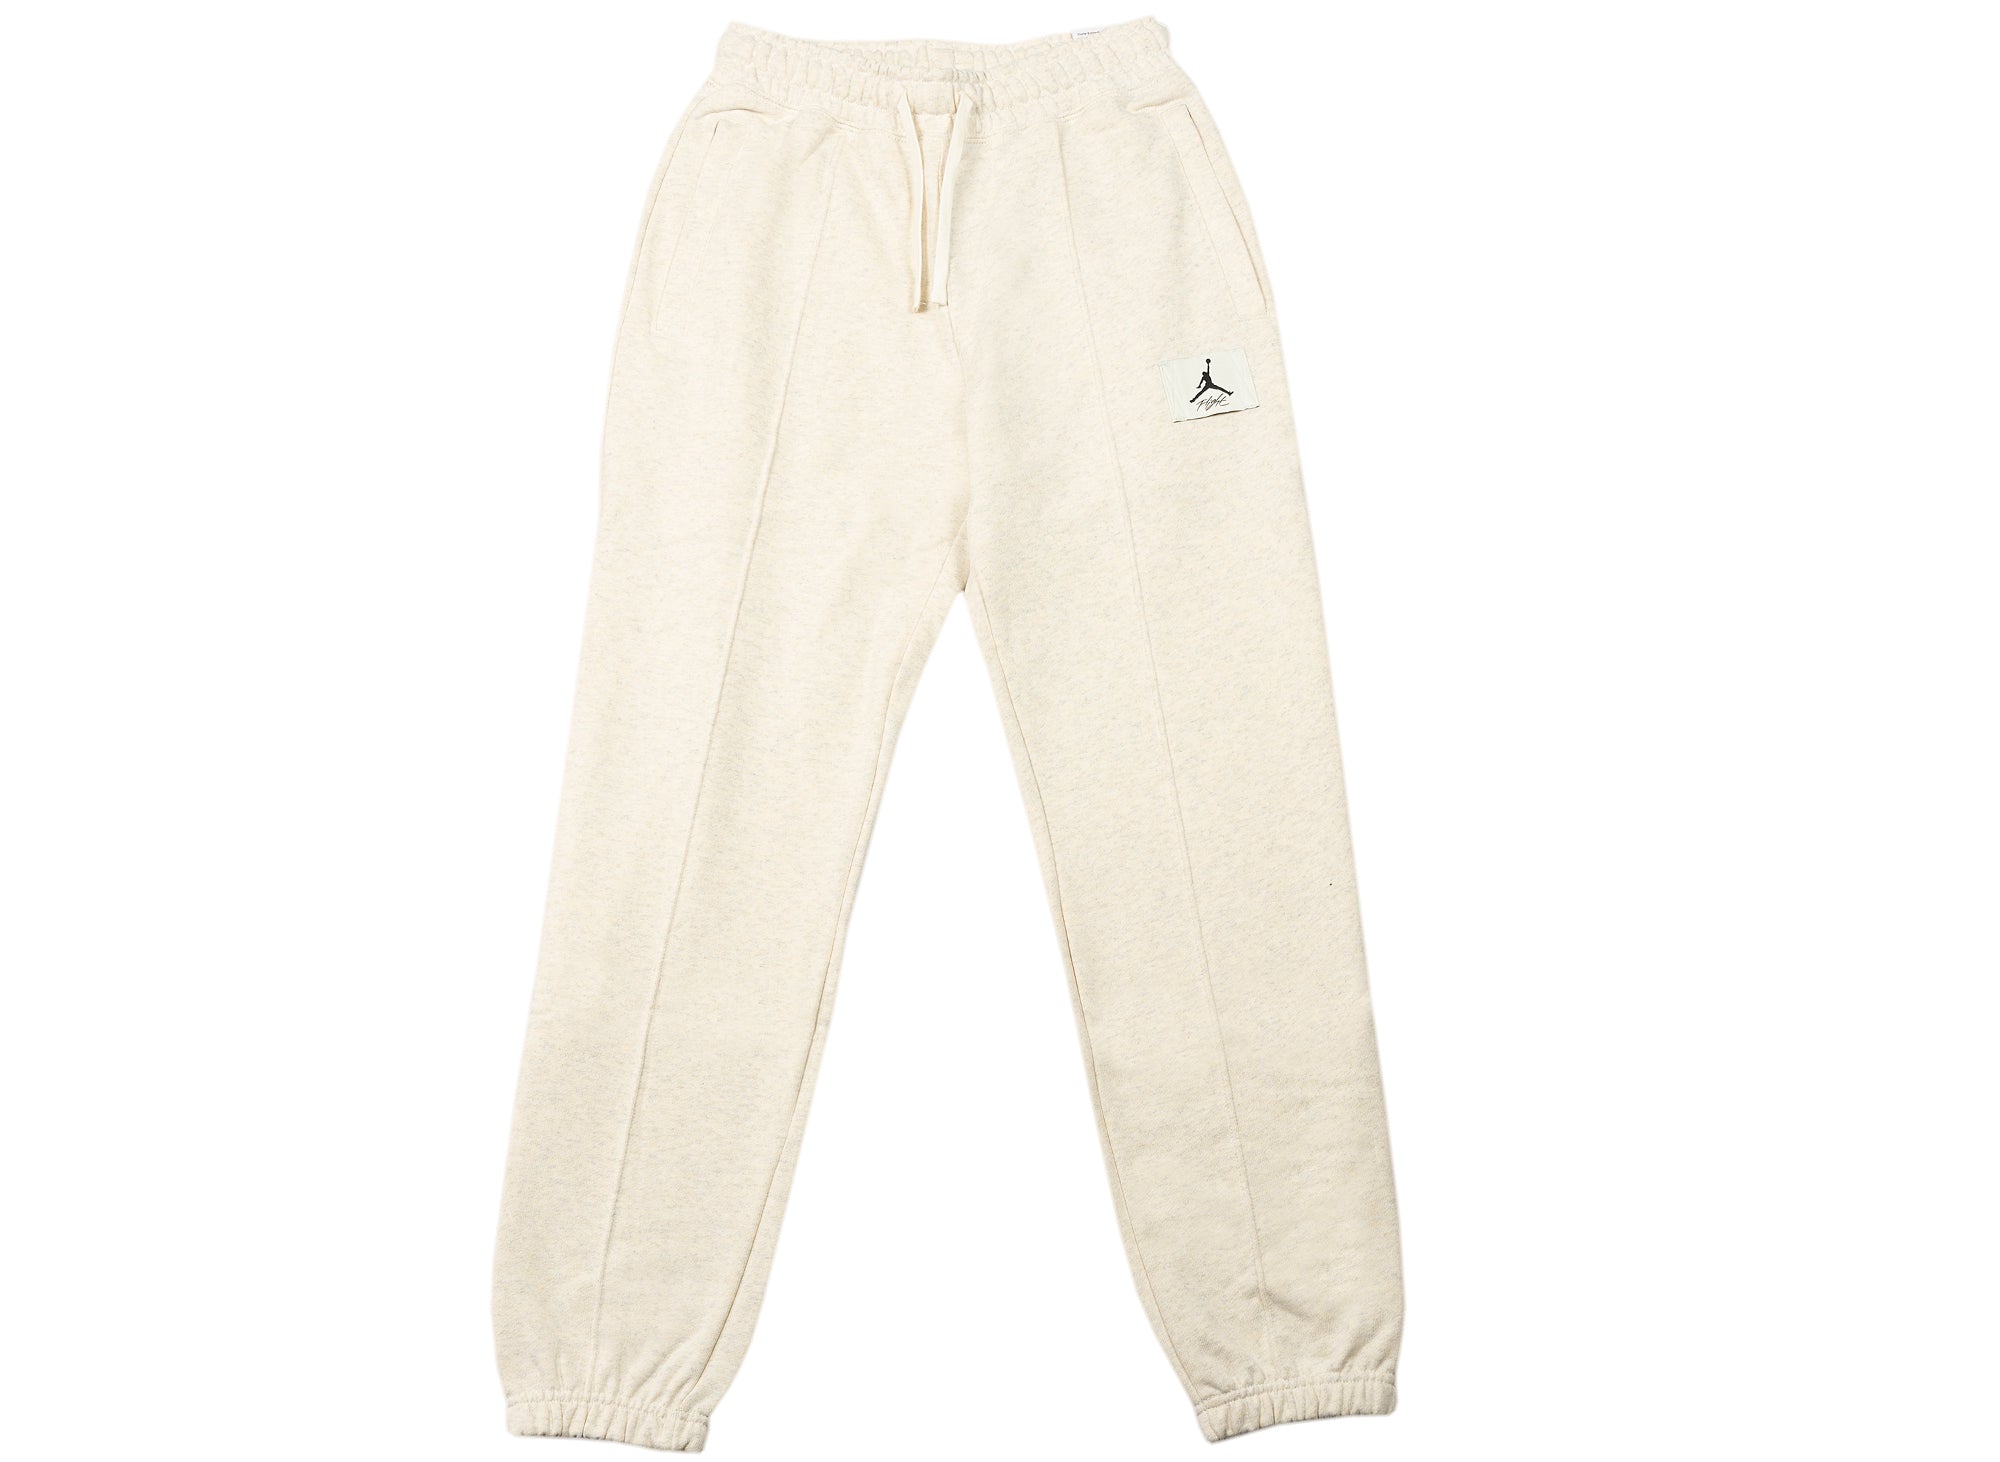 Women's Jordan Essentials Fleece Pants